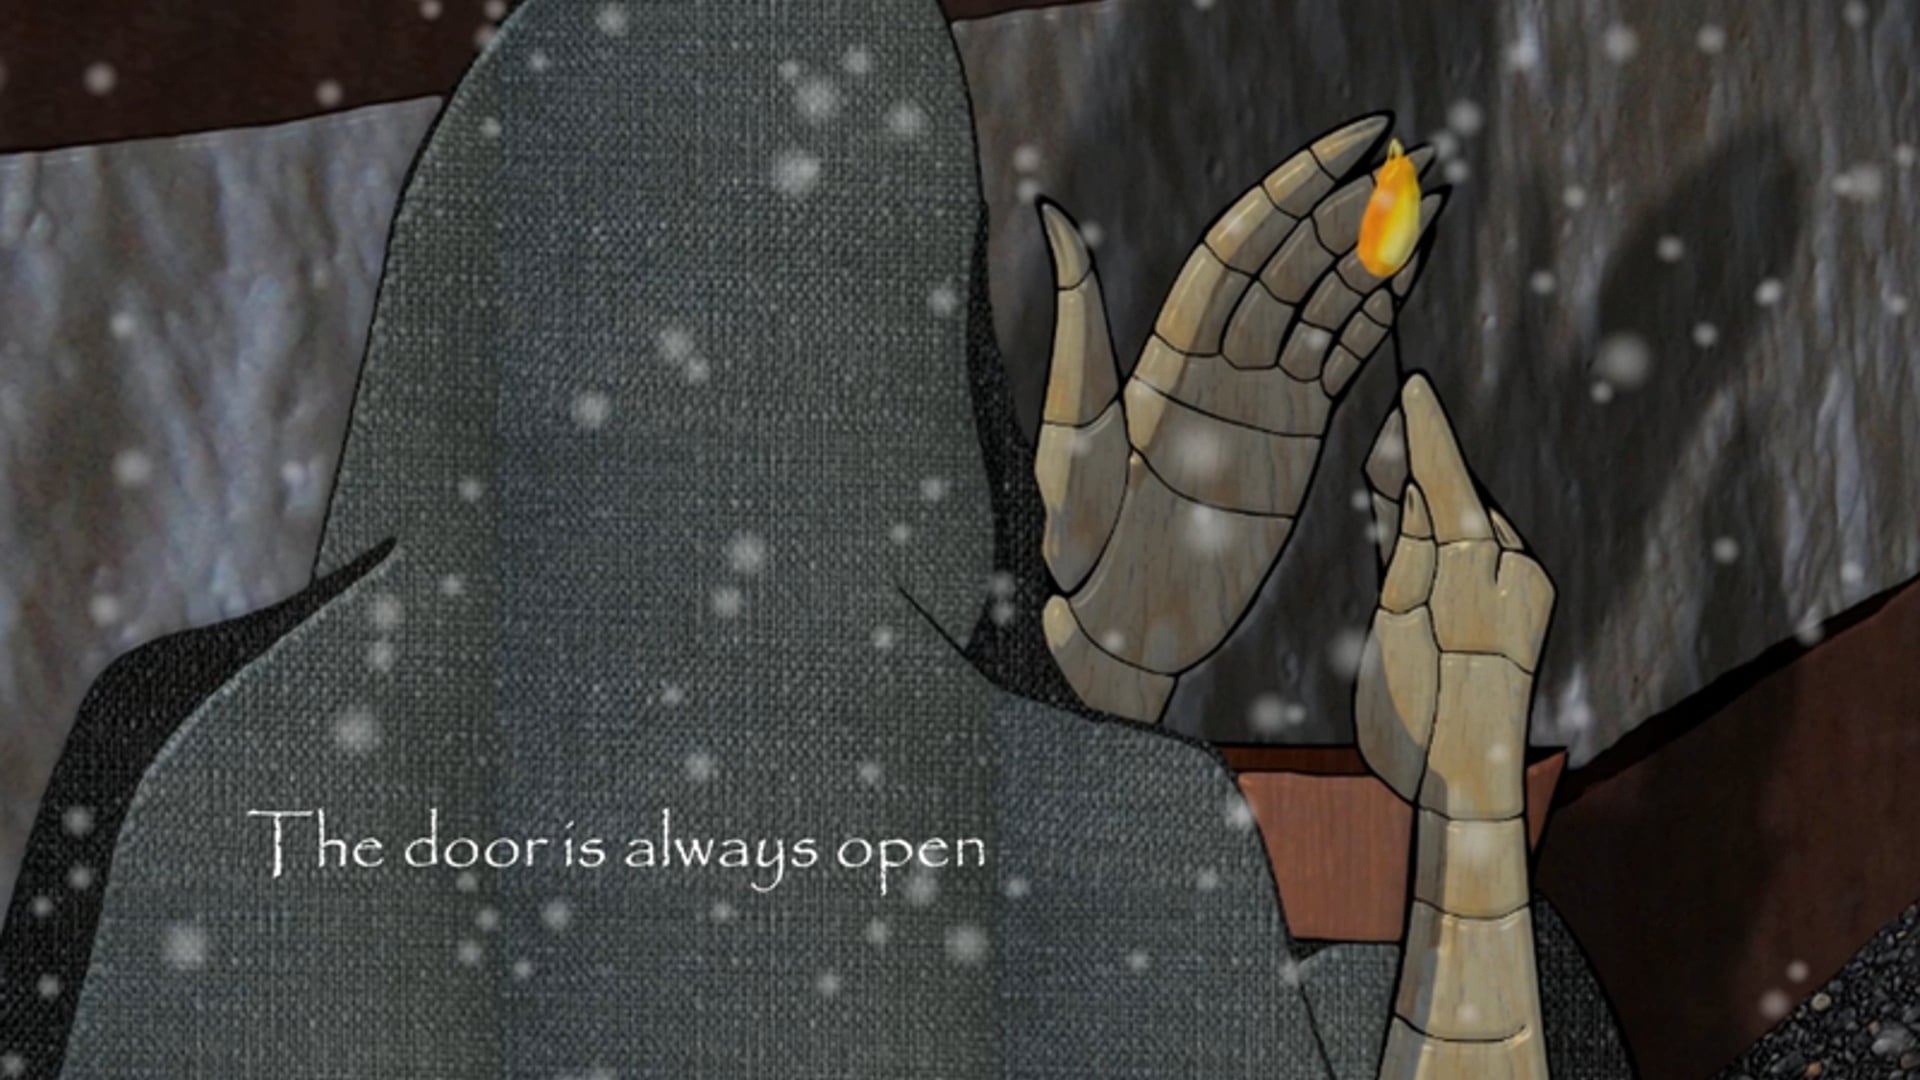 The door is always open